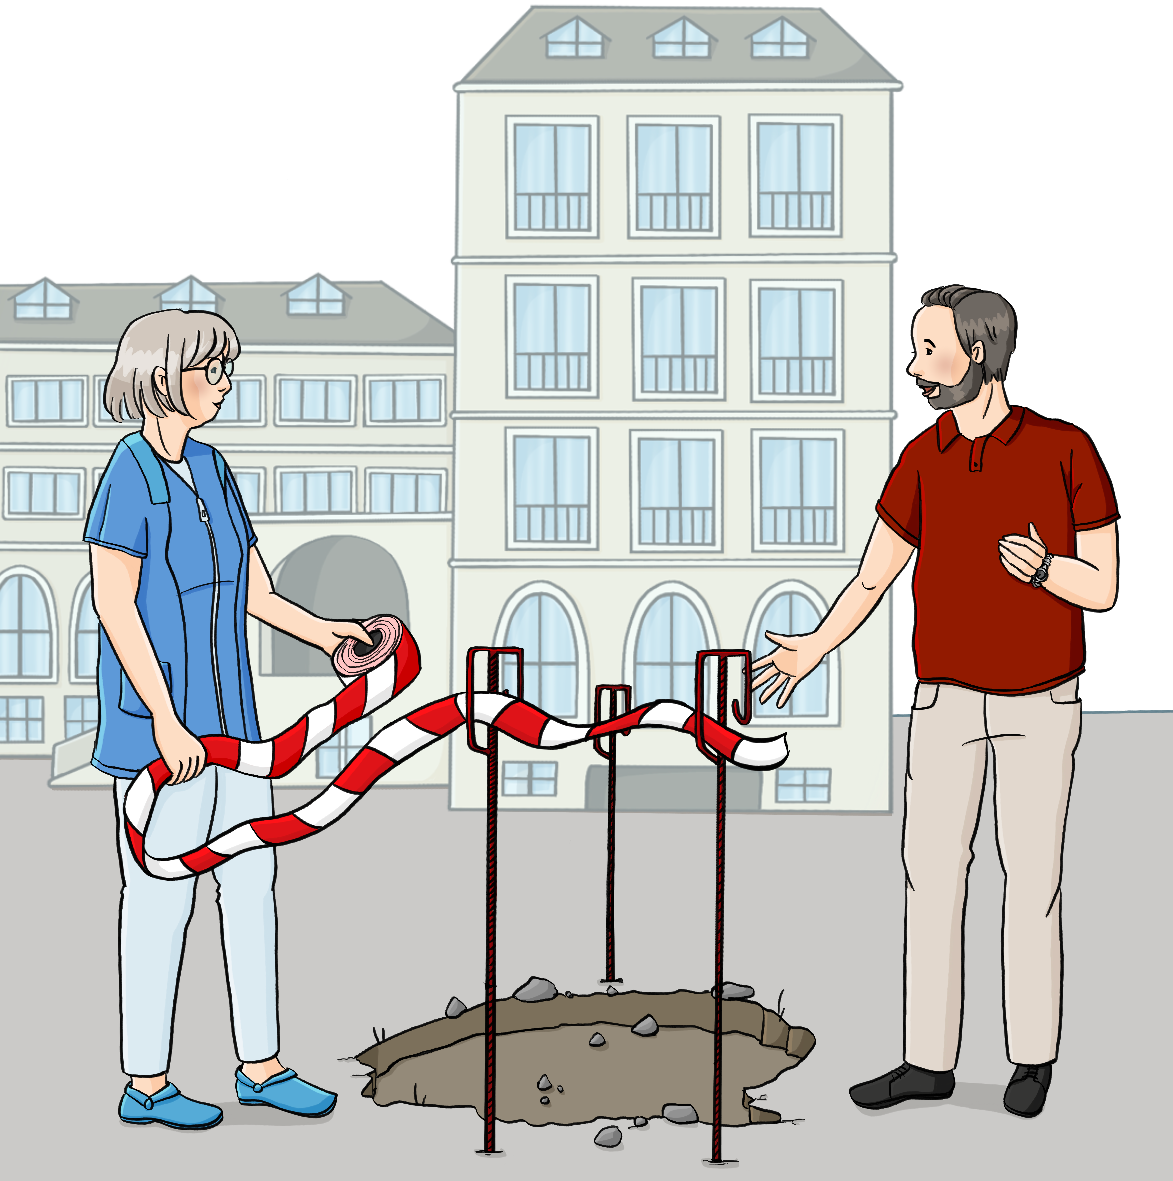 Eine Frau in blauem Kittel und ein Mann stehen neben einem Loch im Boden. Um das Loch herum stehen Metallstützen mit Absperrband. Die Frau hält eine Rolle Absperrband in der Hand. Im Hintergrund ist ein Schulgebäude. 